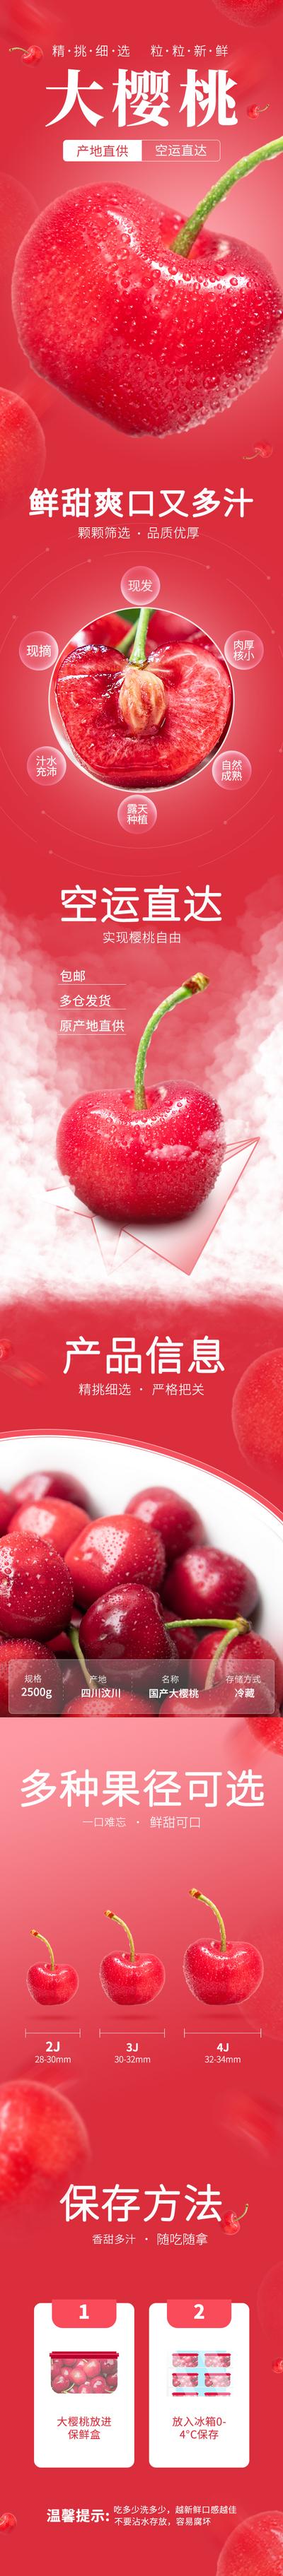 南门网 电商海报 详情页 水果 大樱桃 生鲜 红色 美食 促销  